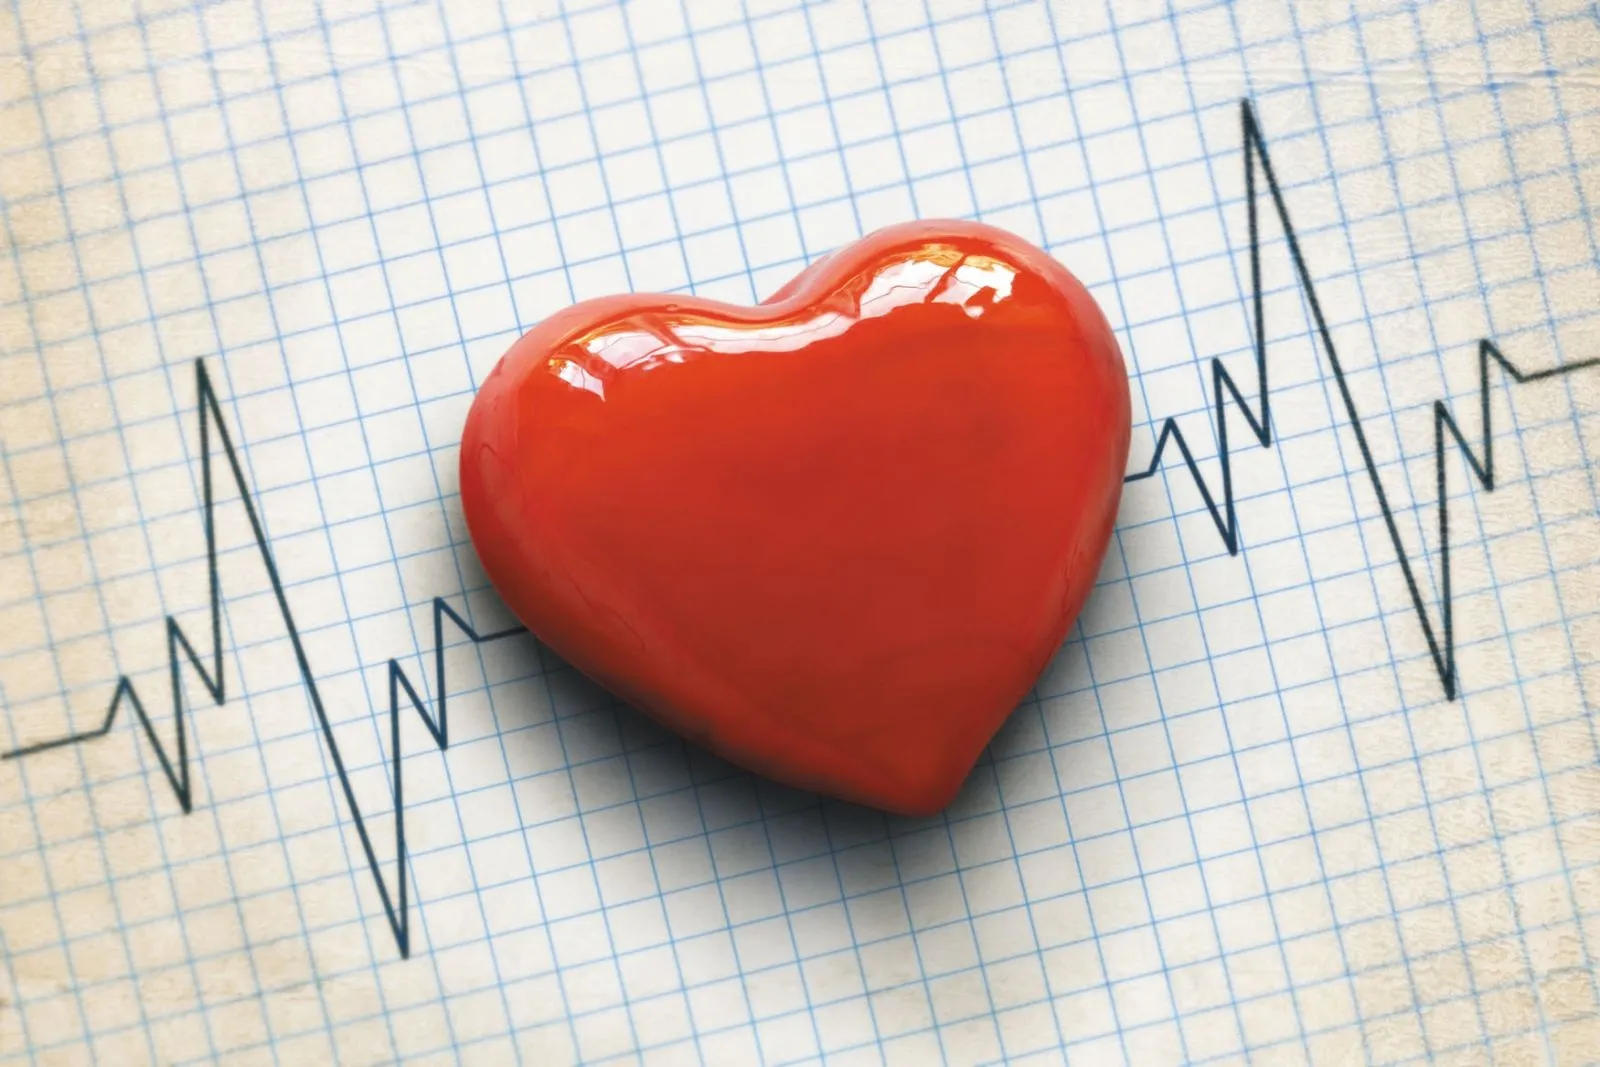 Heart tonic vélemények ✚ árak ✚ rendelés ✚ összetétel ✚ gyógyszertár ✚ vásárlás ✚ Magyarország ✚ hozzászólások.